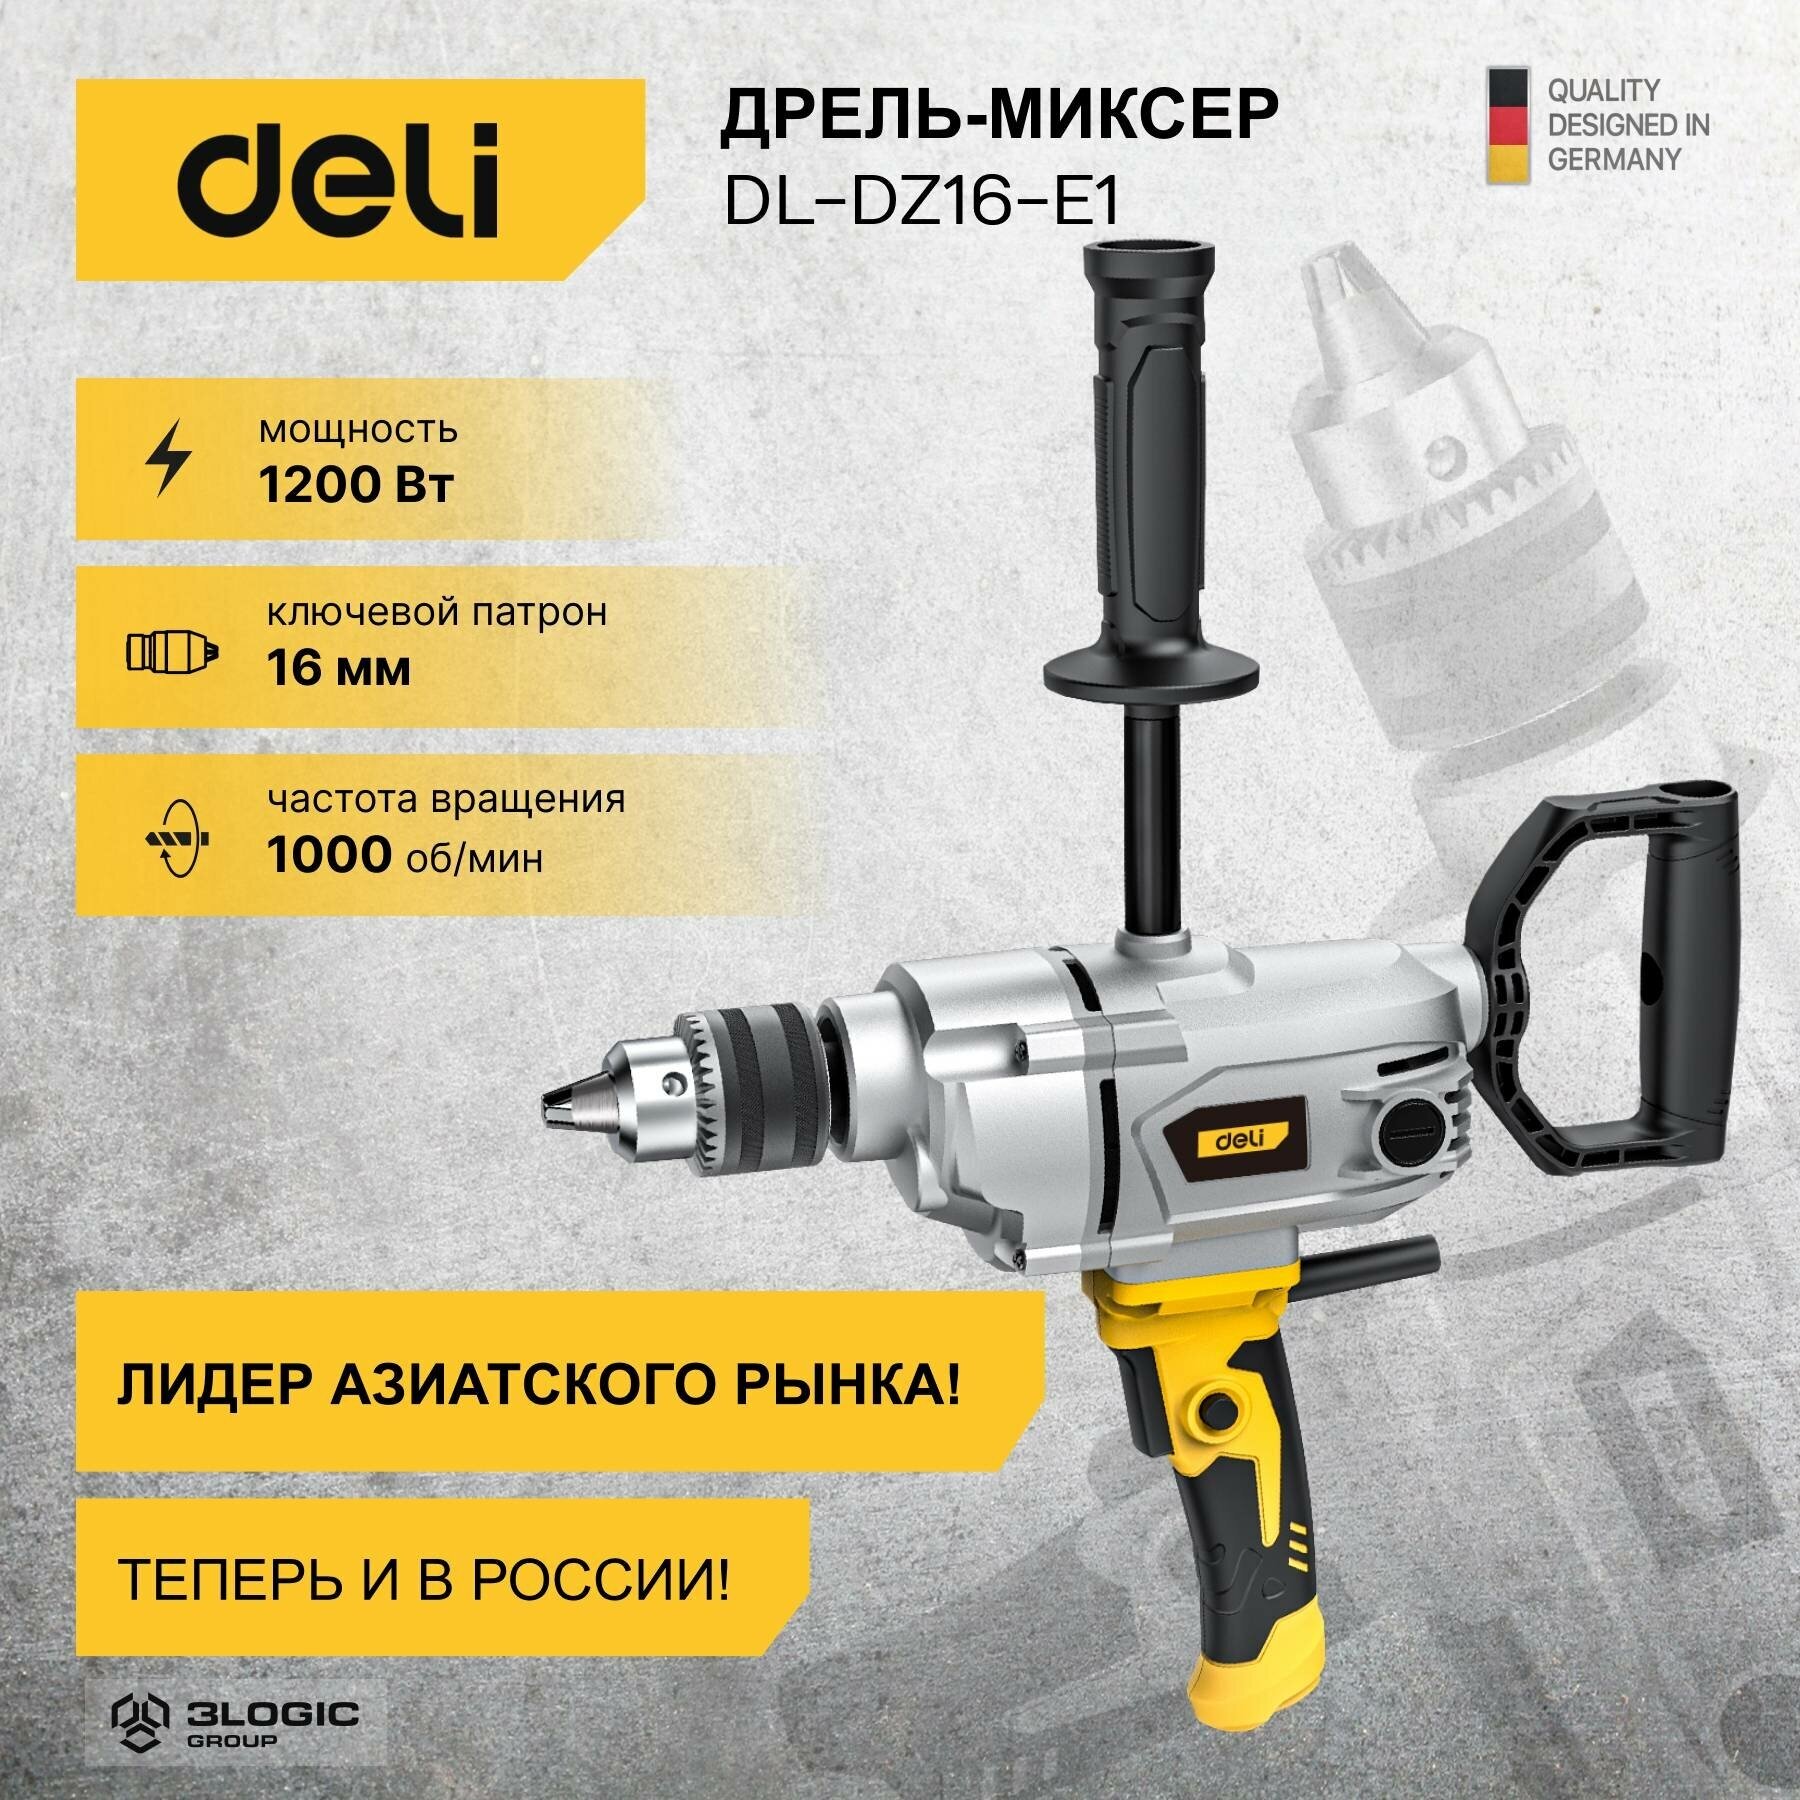 Строительный миксер Deli DL-DZ16-E1 купить в Красноярске